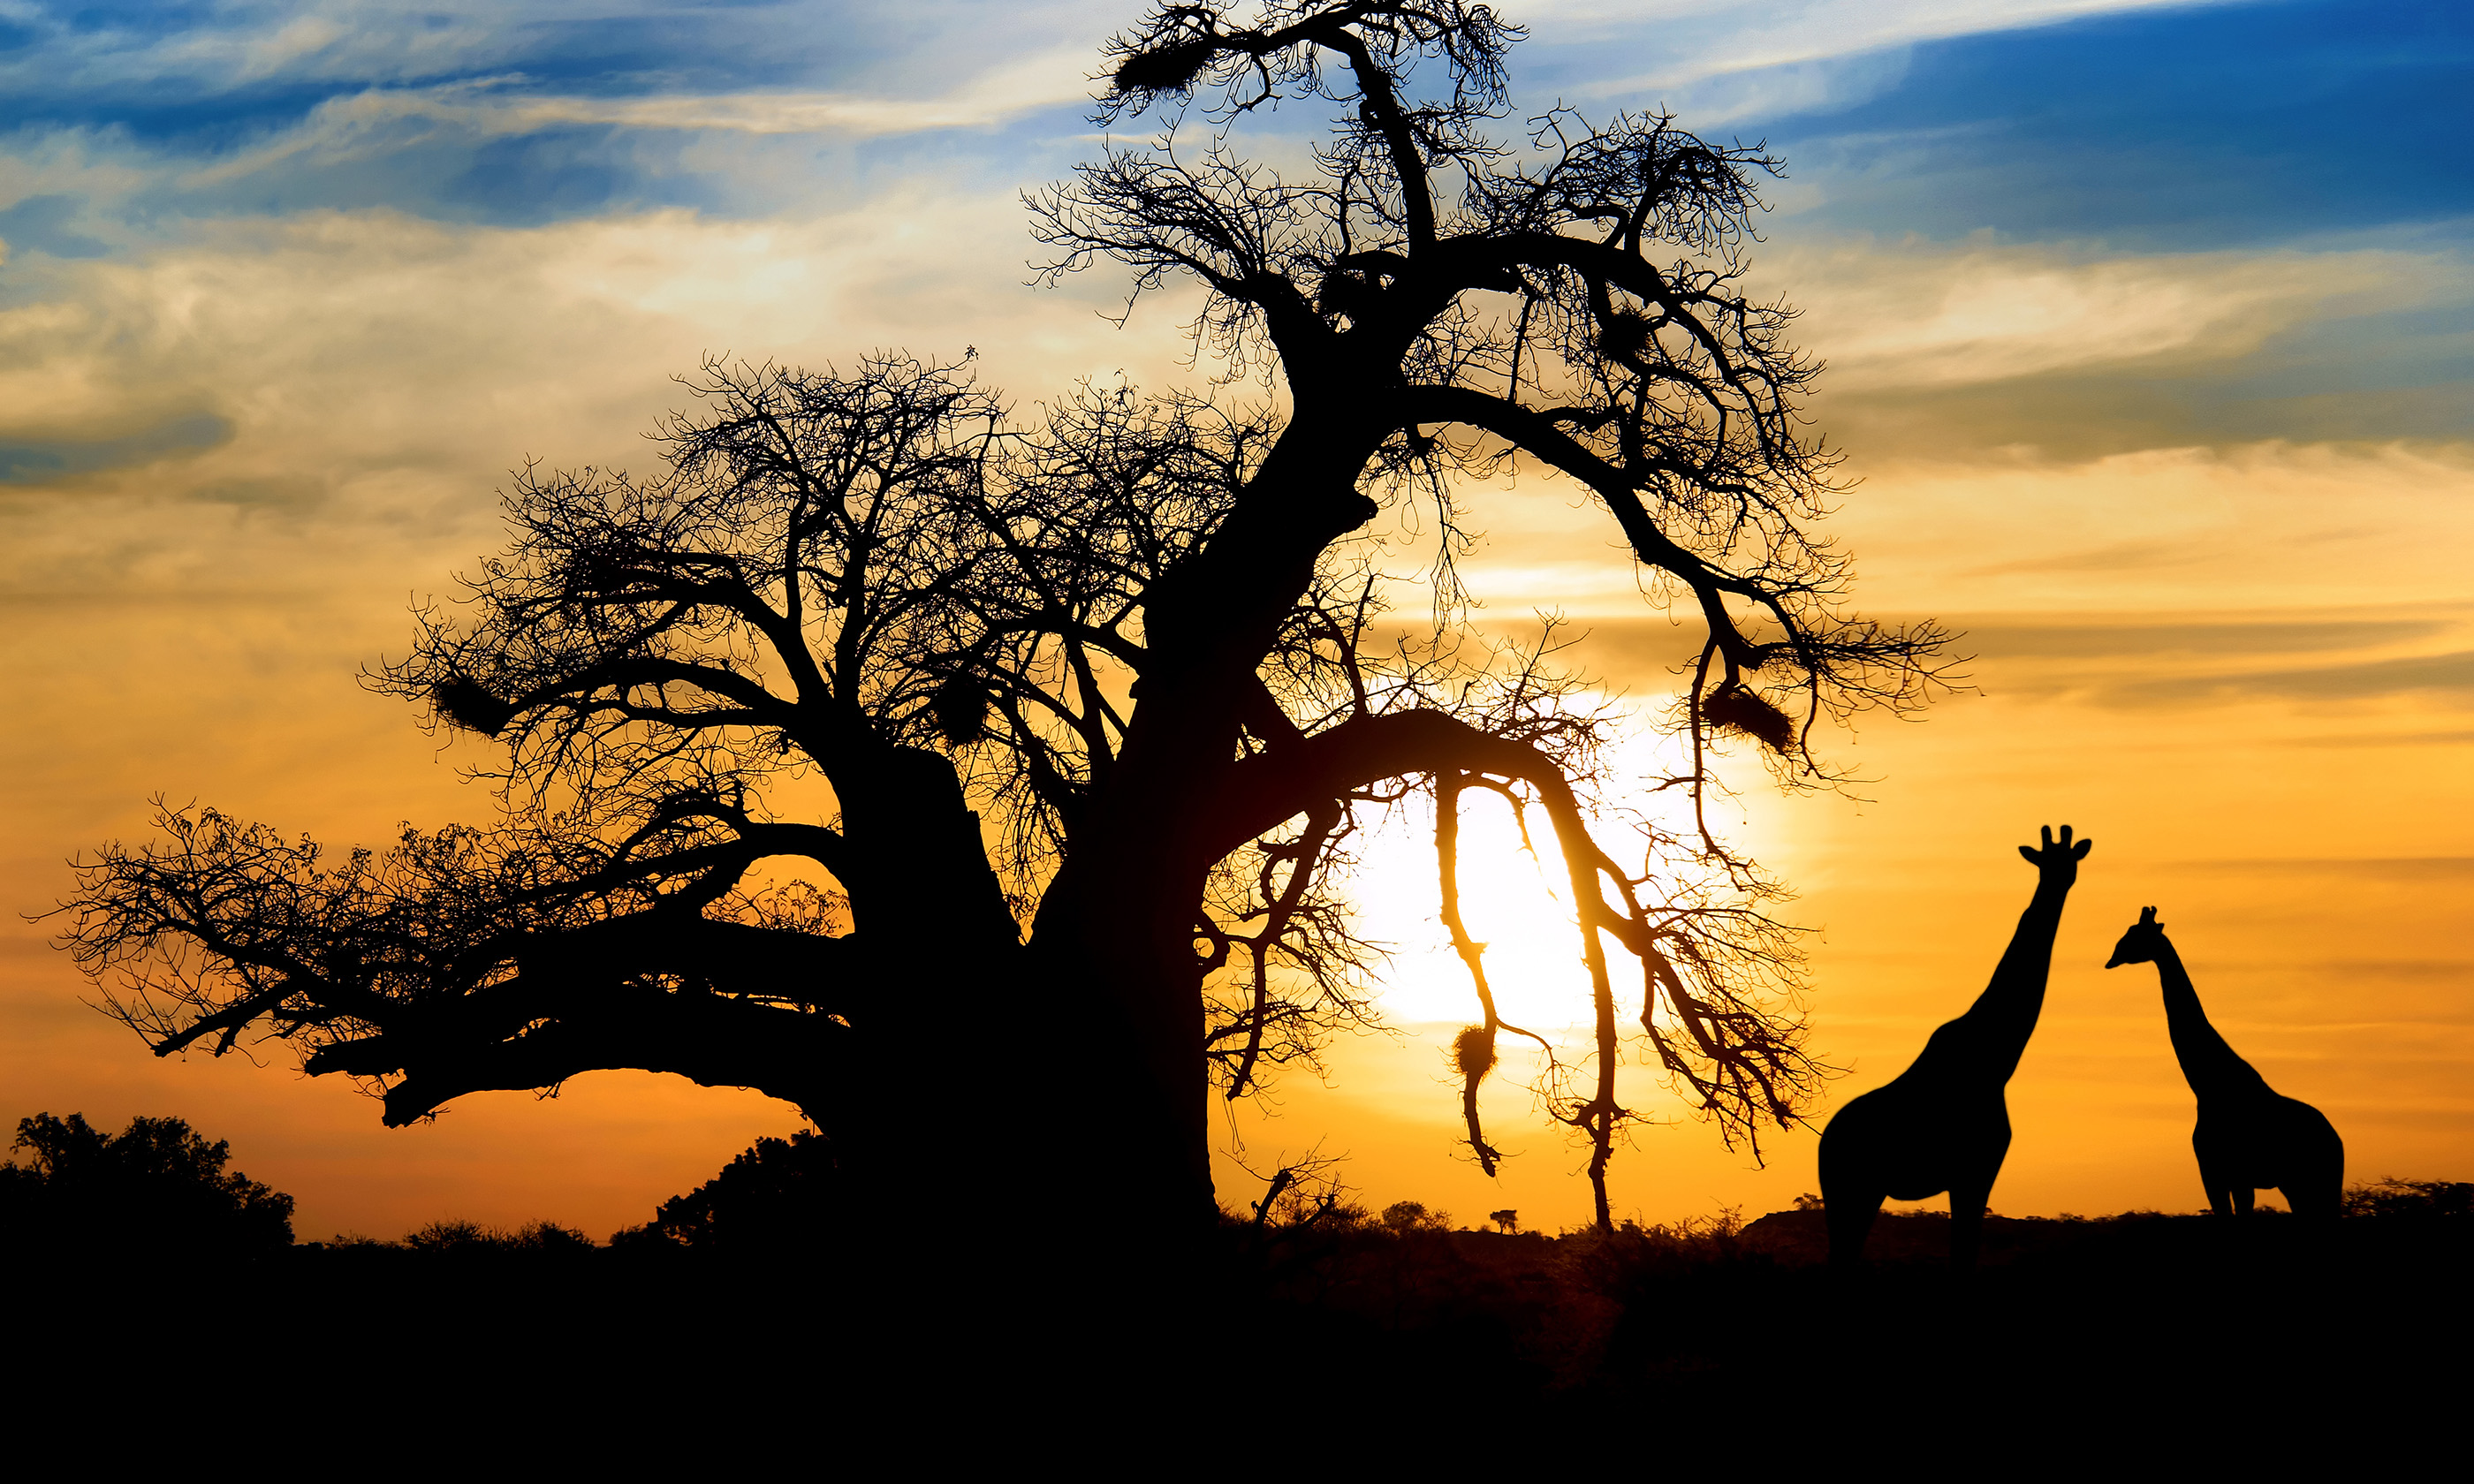 Giraffes at sunset. (Shutterstock: see credit below)